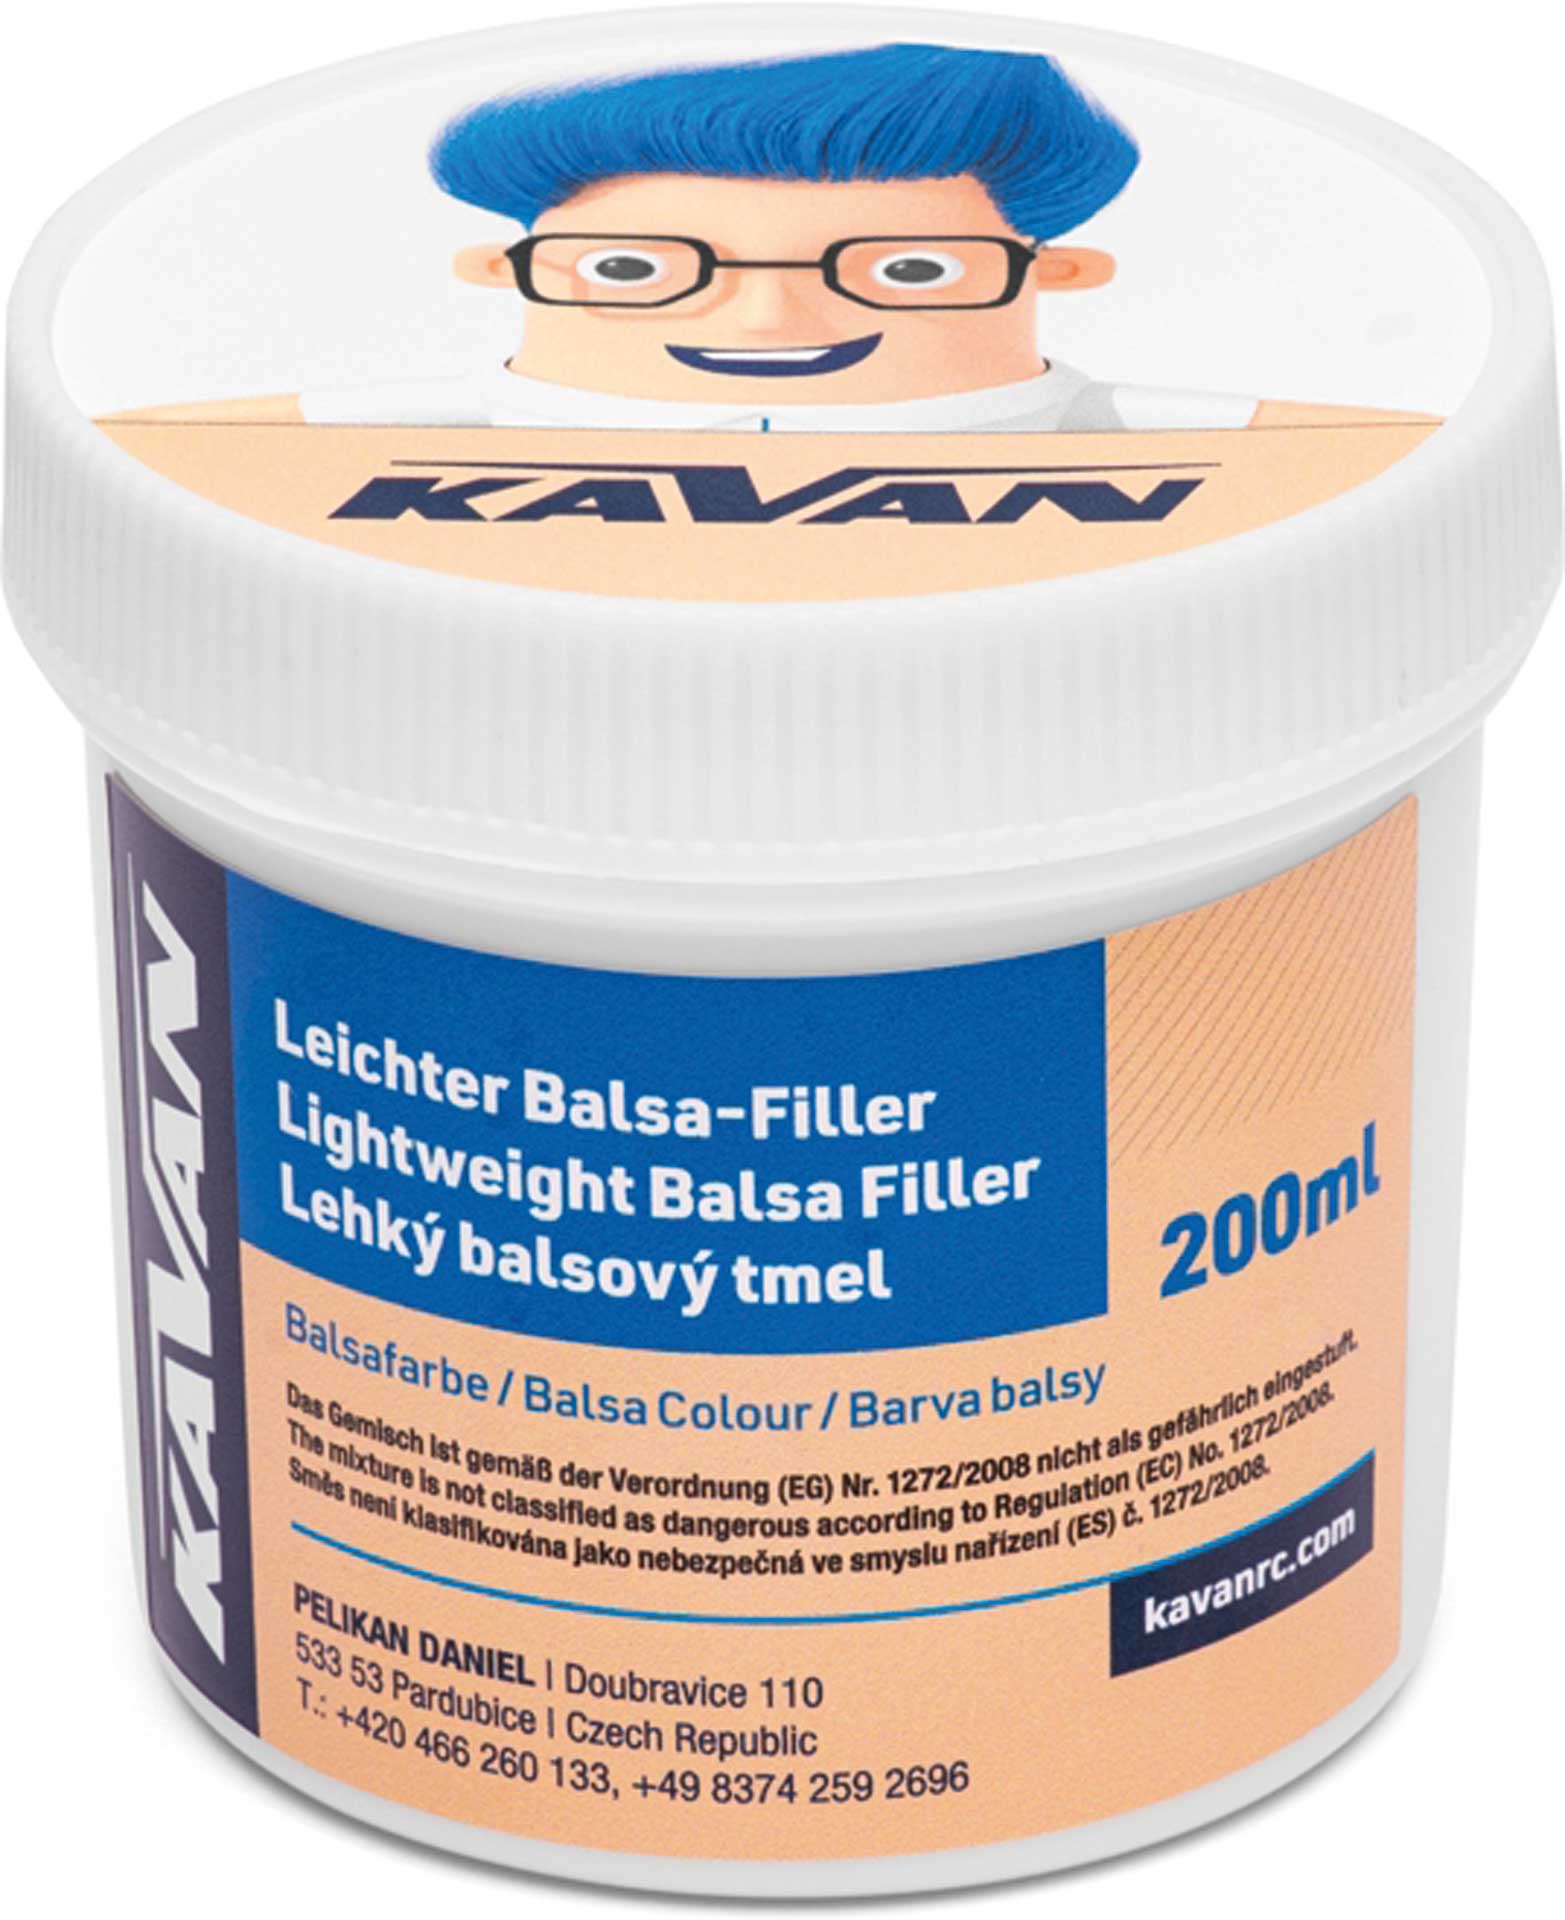 KAVAN Balsa-Filler 200ml - peinture balsa (FR Étiquette)